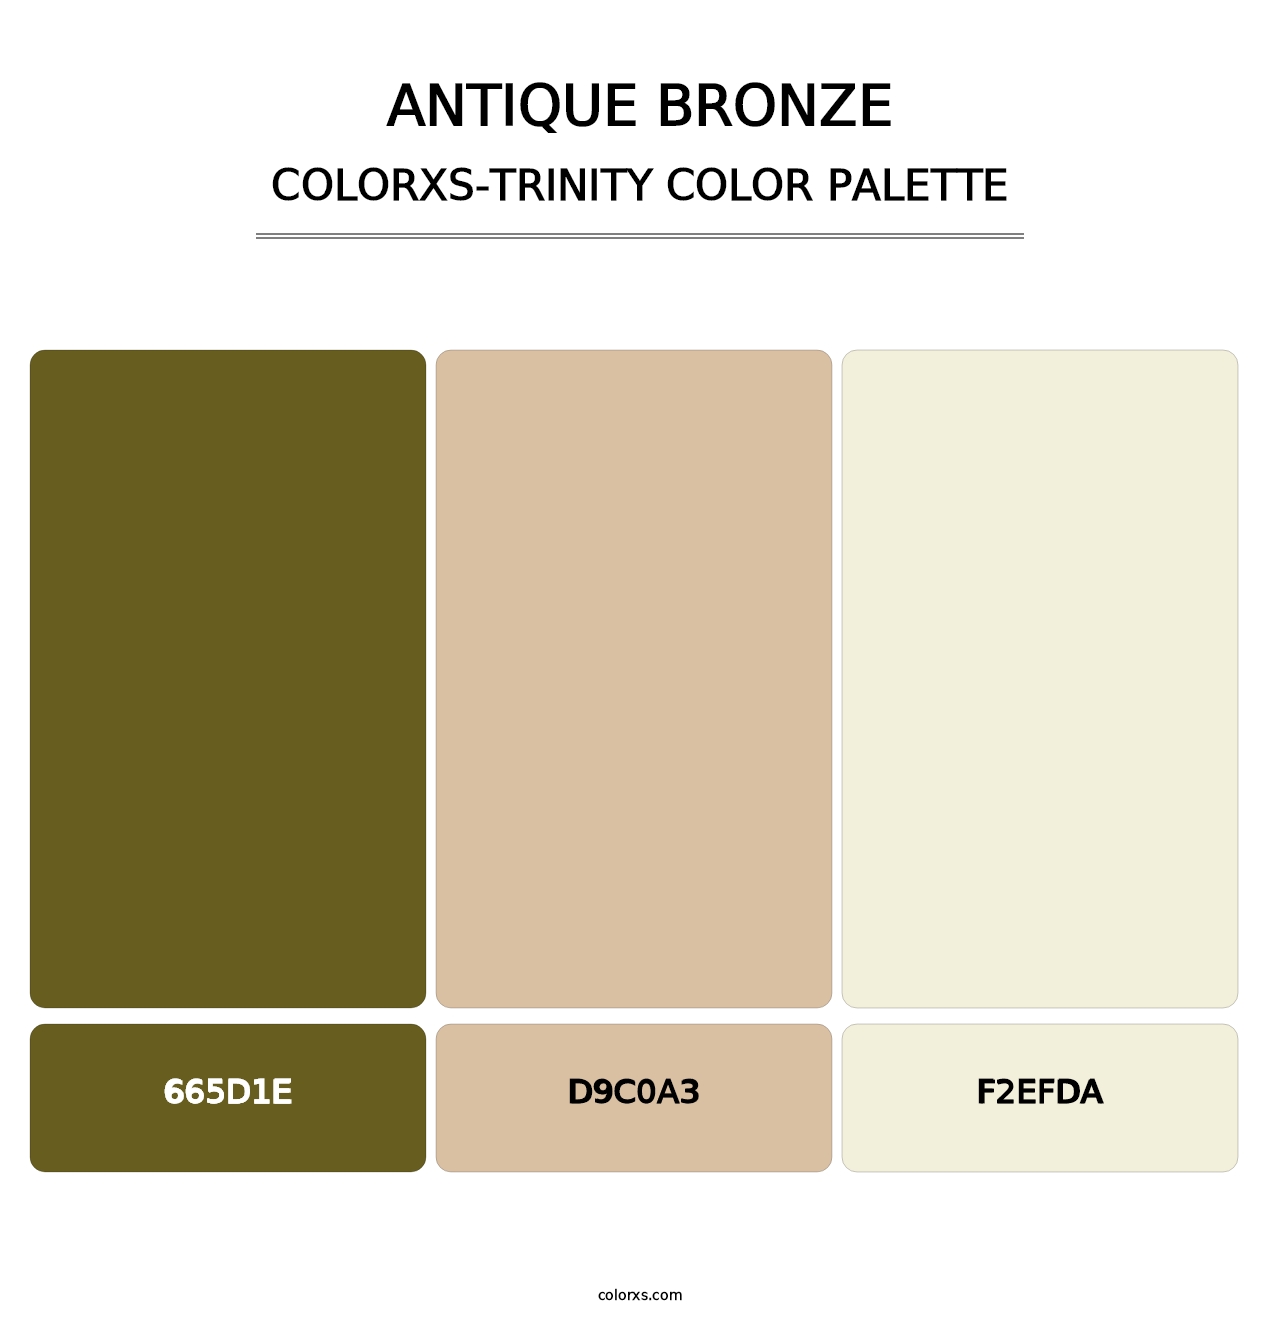 Antique Bronze - Colorxs Trinity Palette